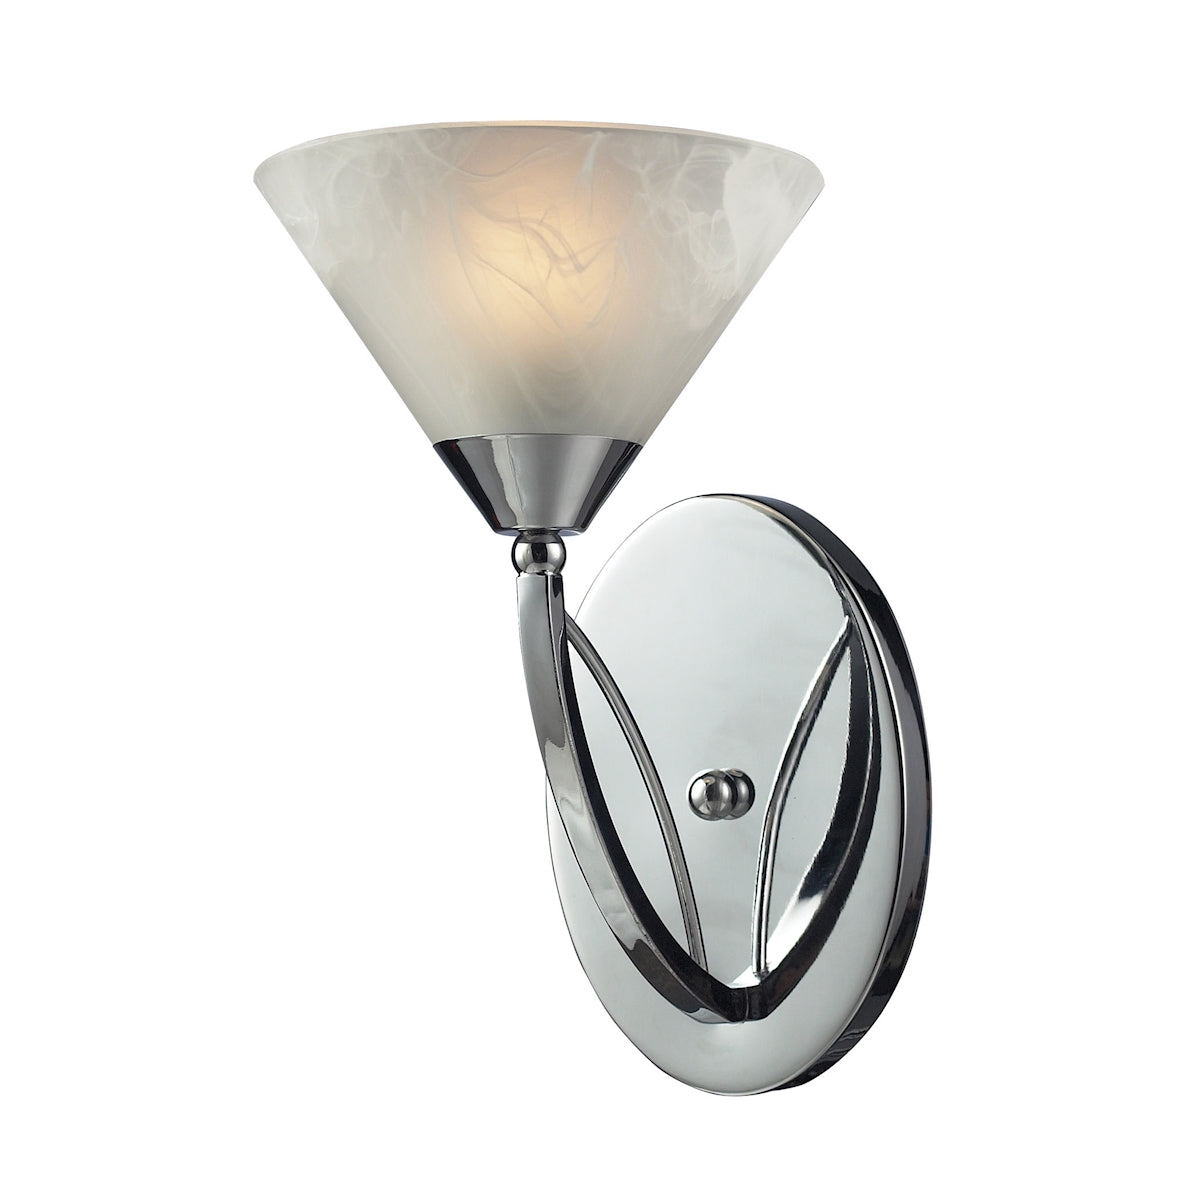 ELK Lighting 17020/1 Elysburg 1-Light Vanity Lamp in Polished Chrome with White Marbleized Glass